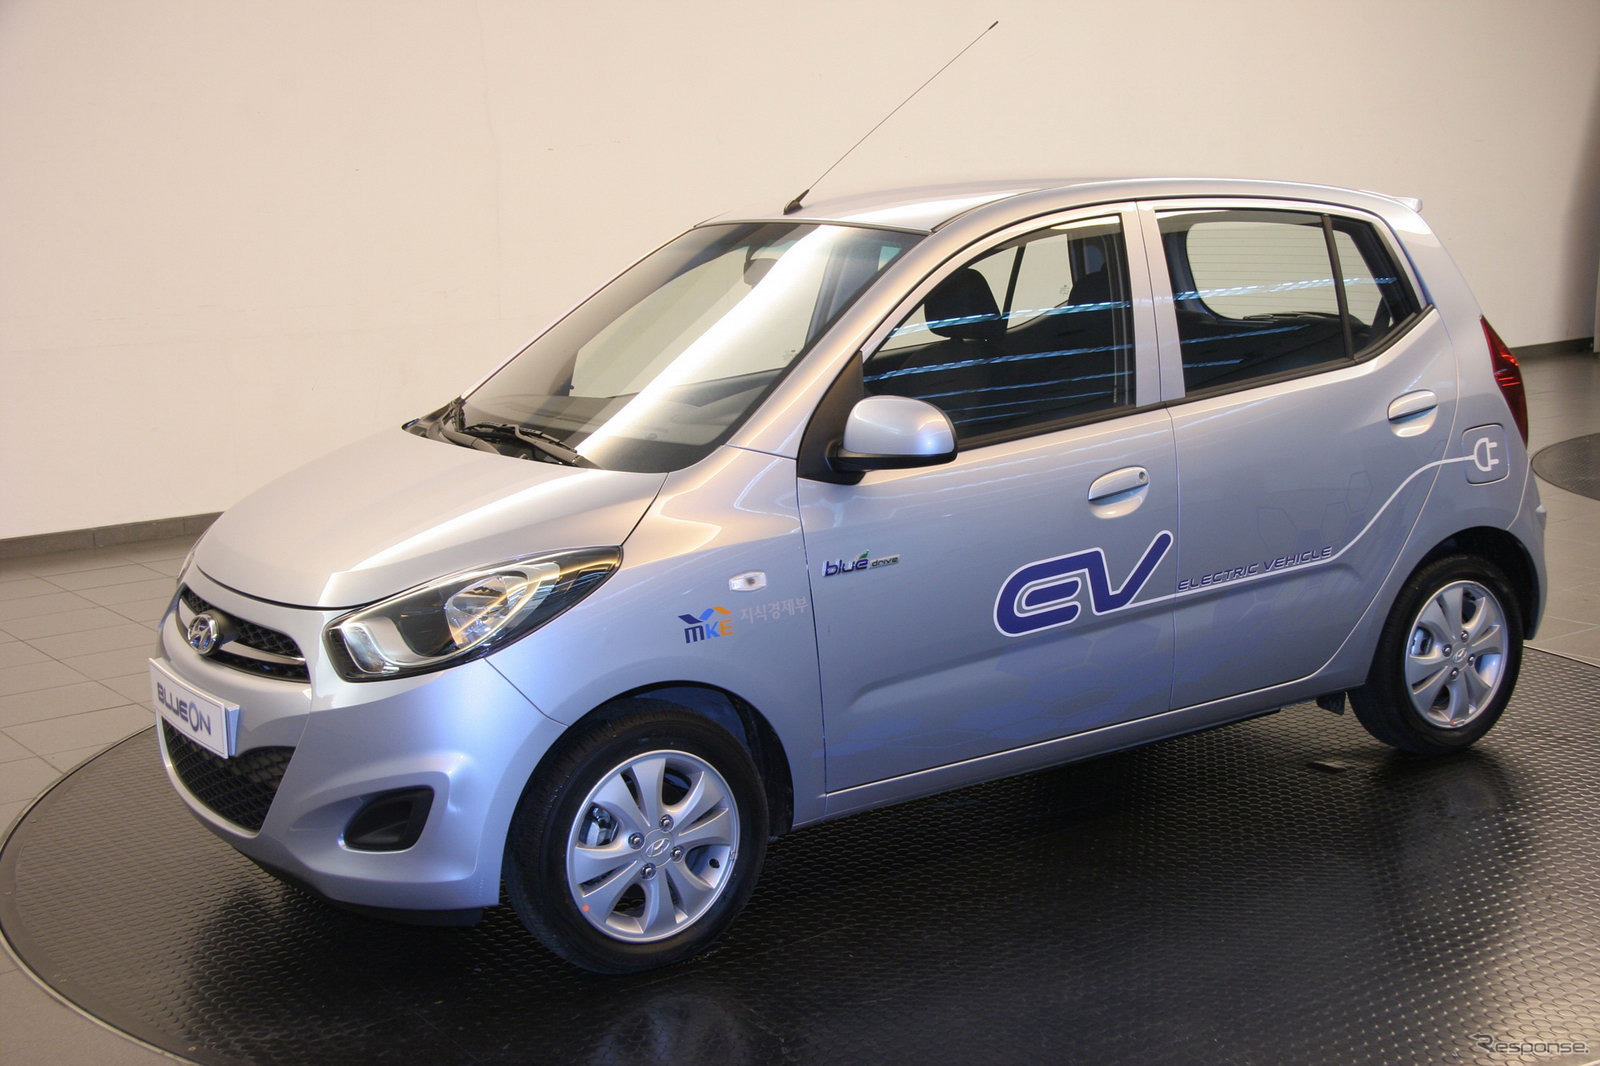 ヒュンダイ初の市販EVとして2010年9月に発表された『i10ブルーオン』